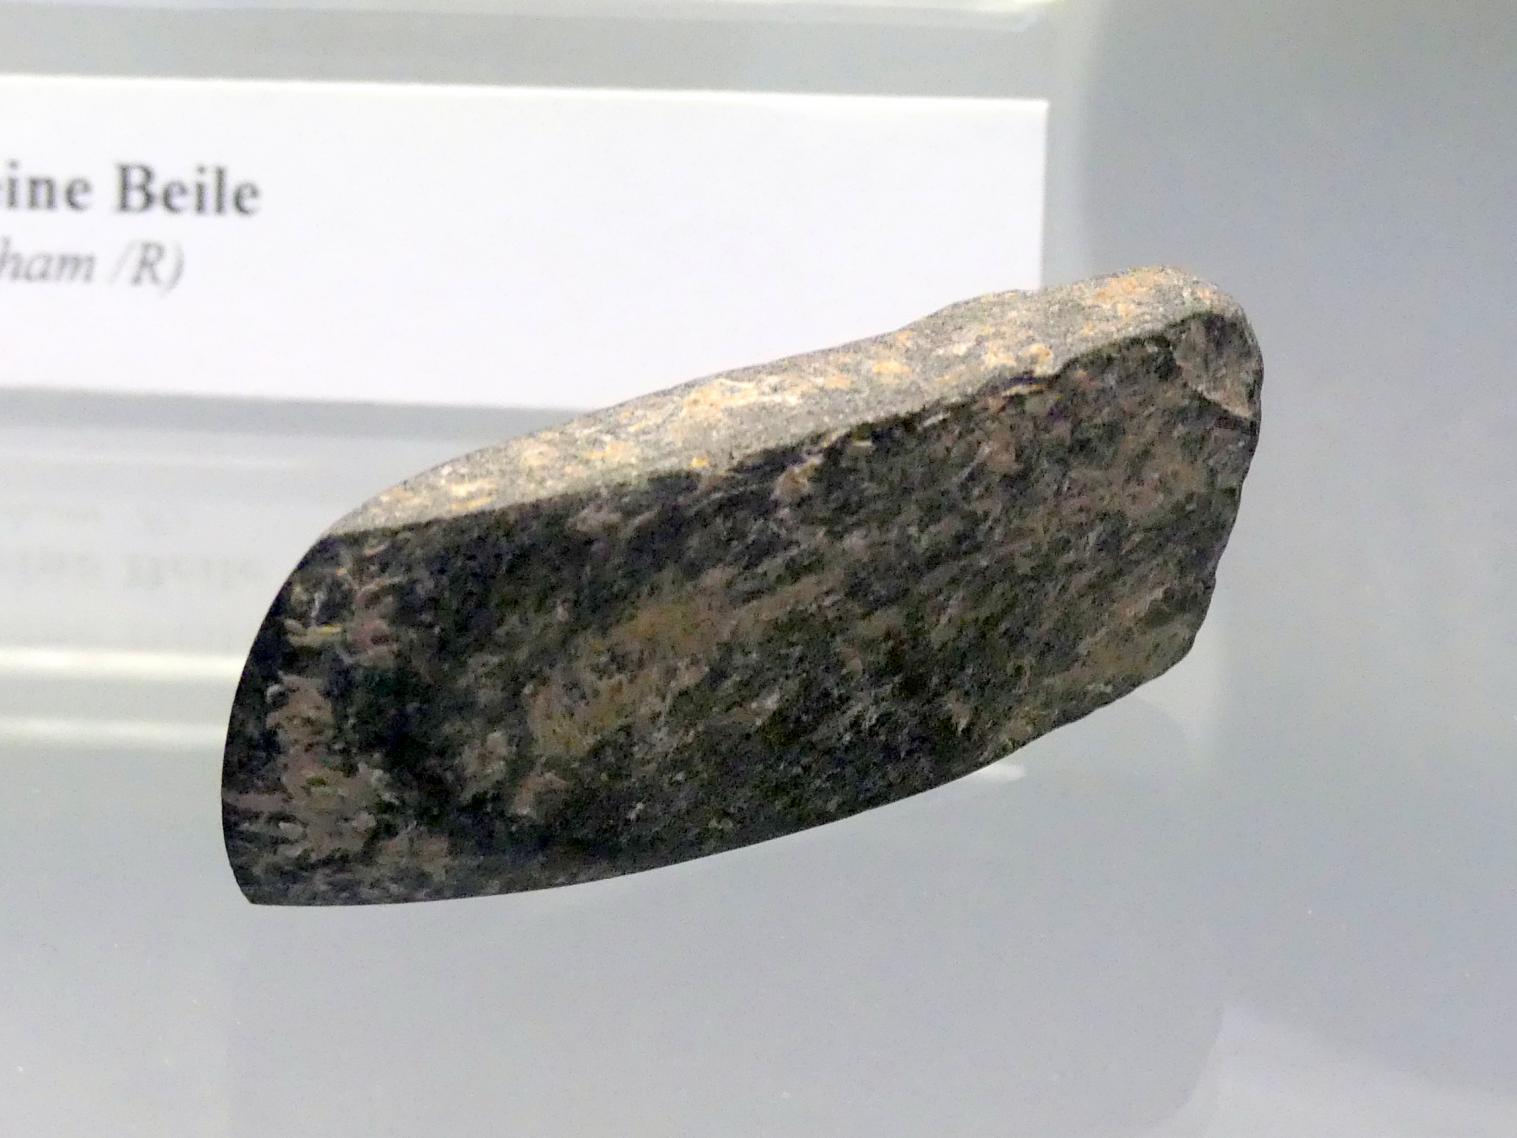 2 kleine Beile, Endneolithikum, 2800 - 1700 v. Chr., Bild 3/5